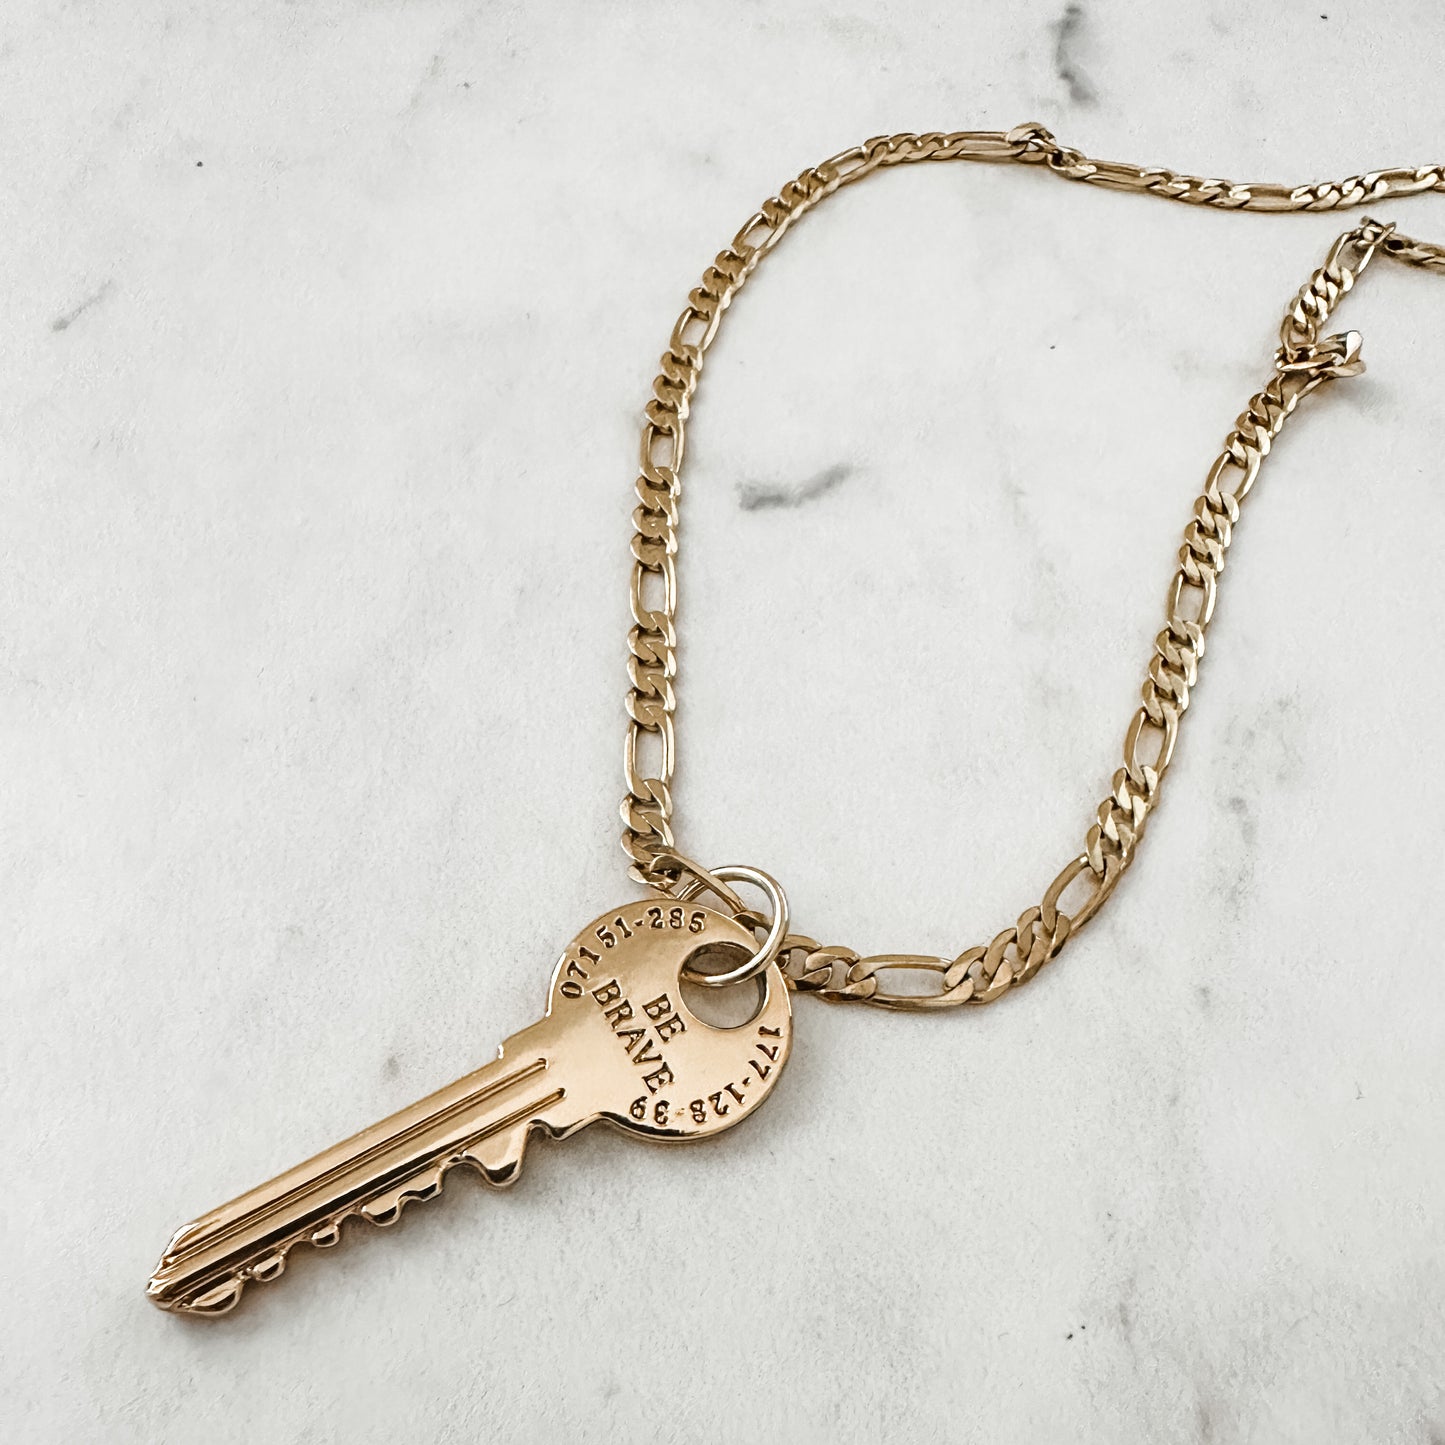 Be Brave Key Necklace